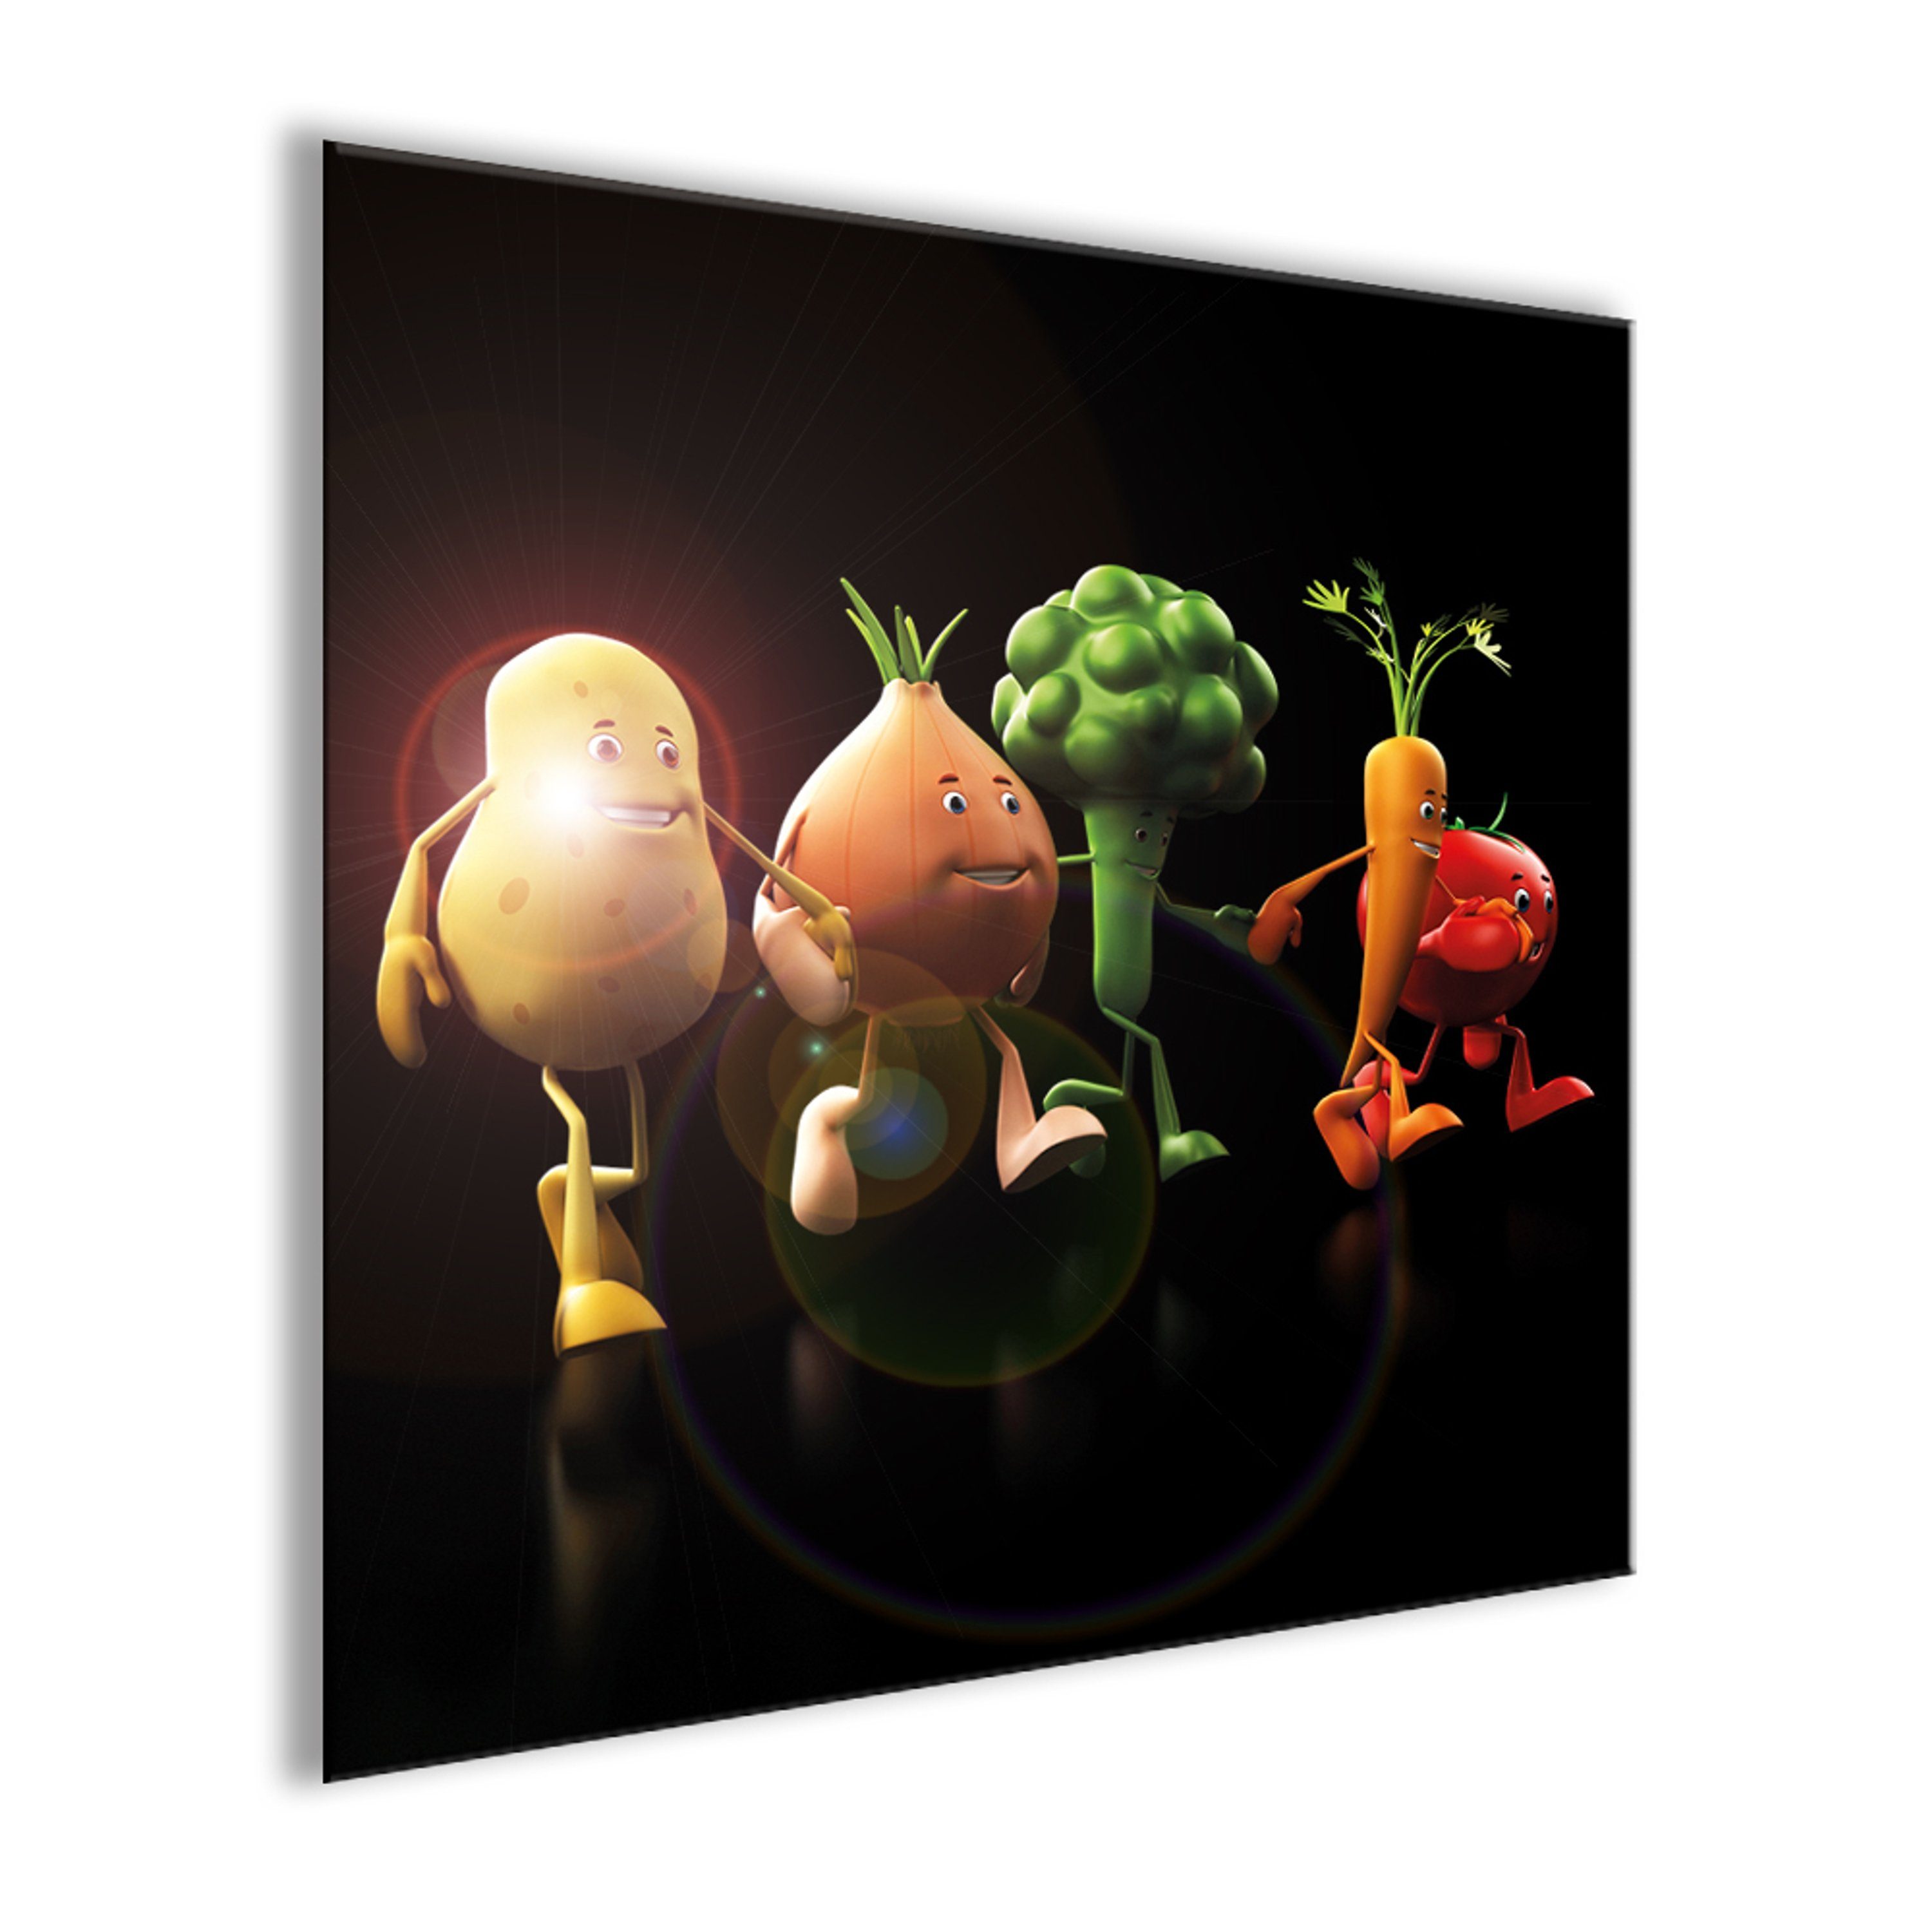 artissimo Glasbild Glasbild 30x30cm lustig, lustiges Bild Gemüse Gemüse Küche Küchenbild